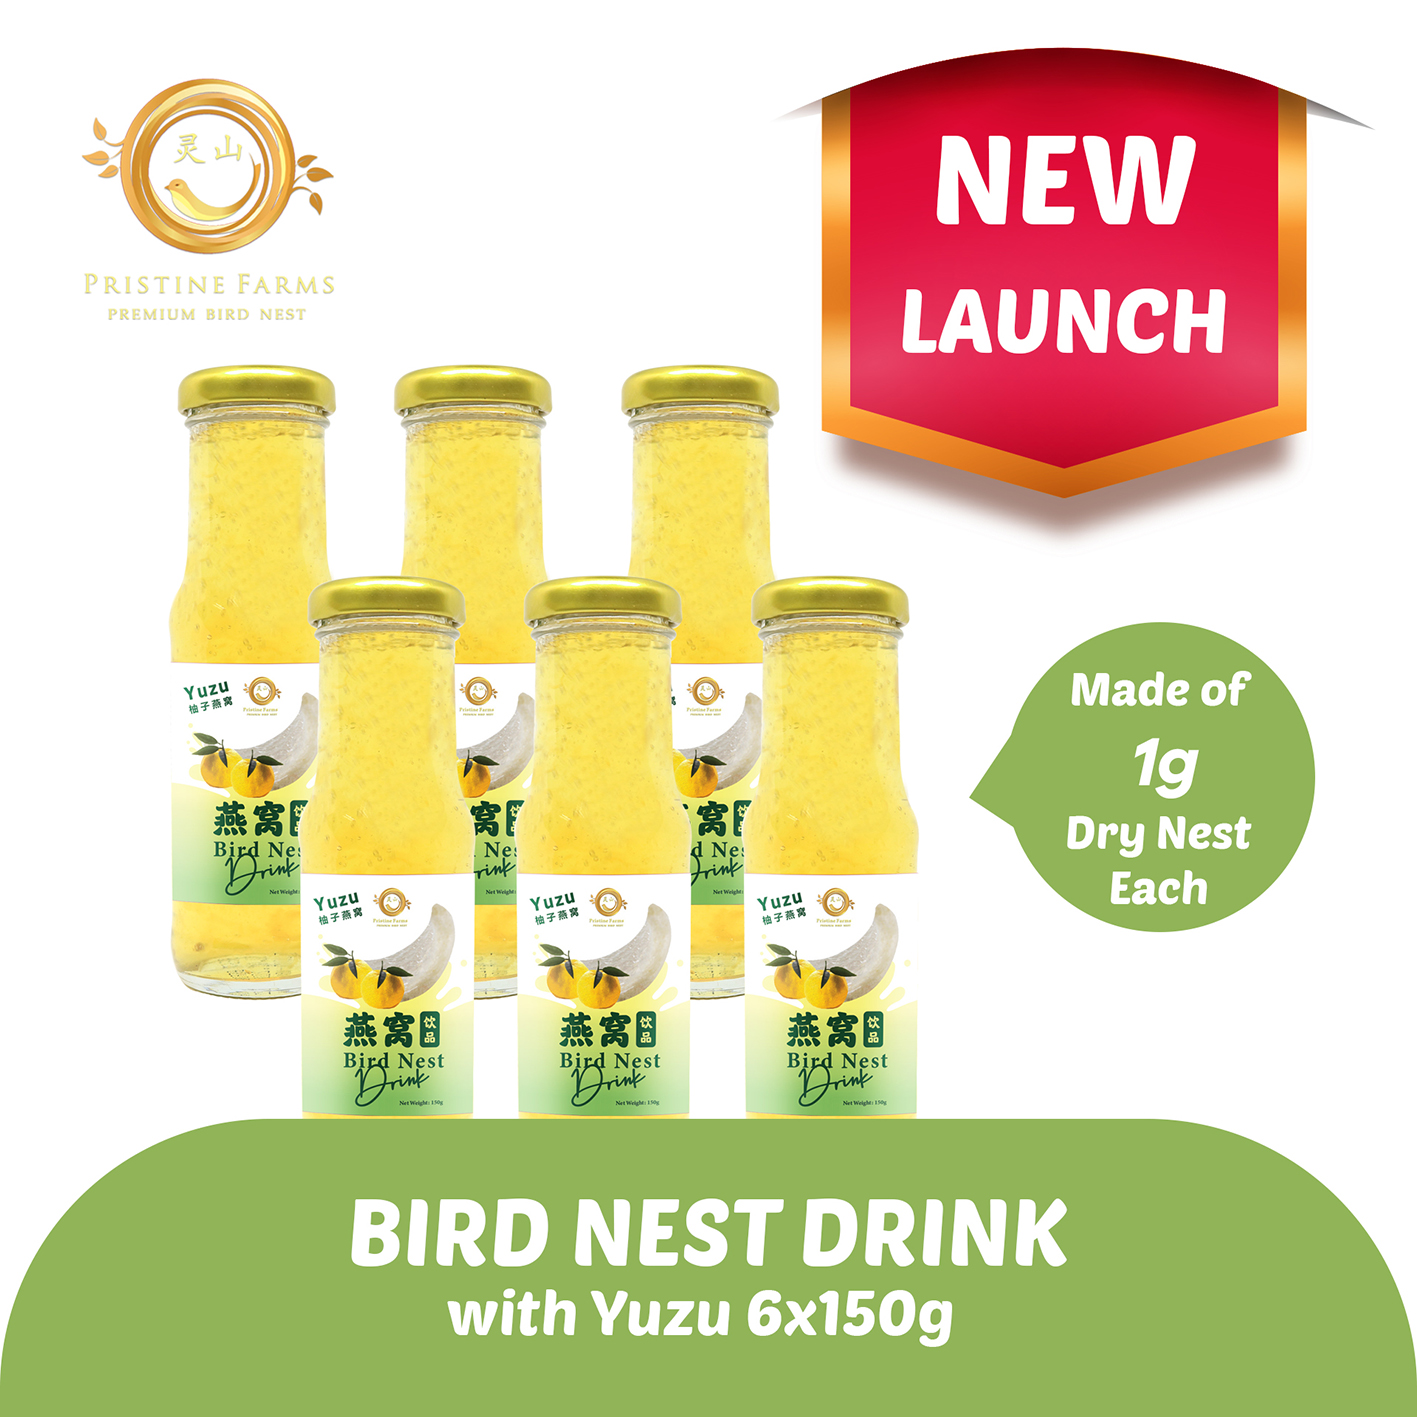 Pristine Farm Bird Nest Yuzu Drink with 1g of Dry Nest - Bundle of 6 x 150g